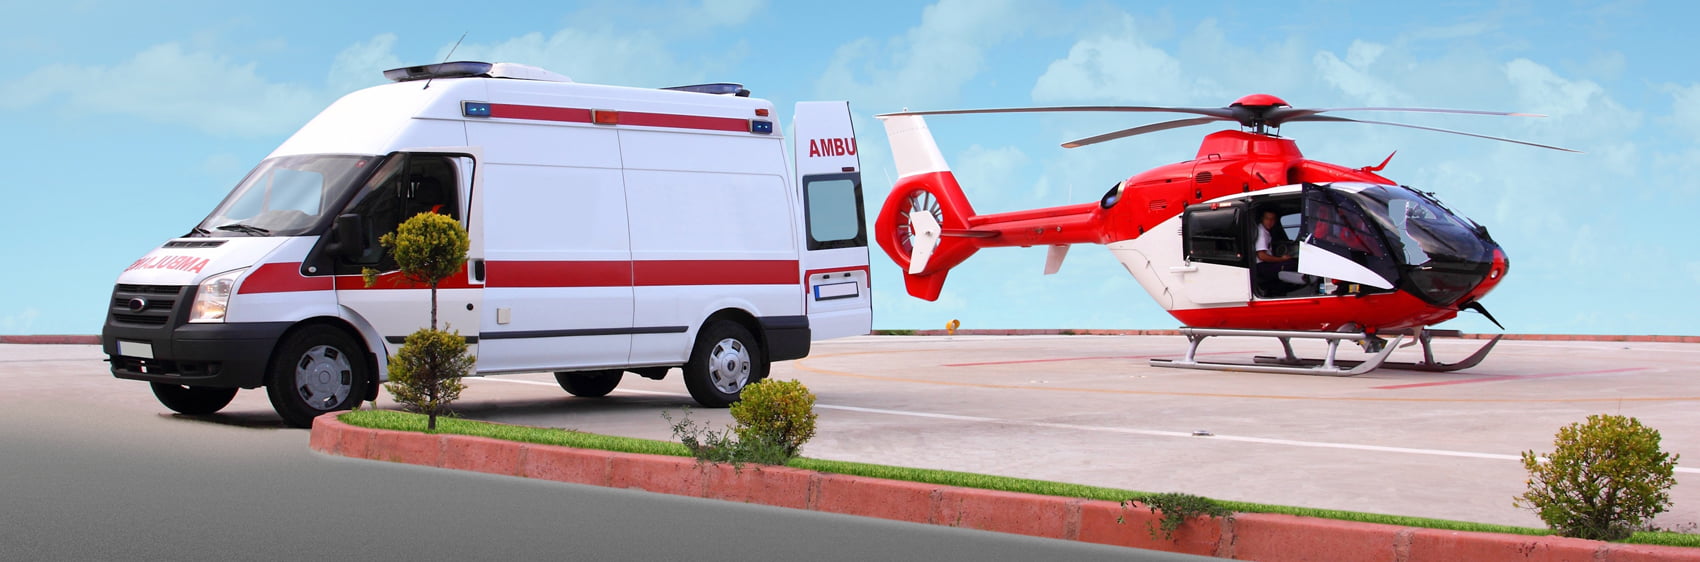 hélicoptère et ambulance